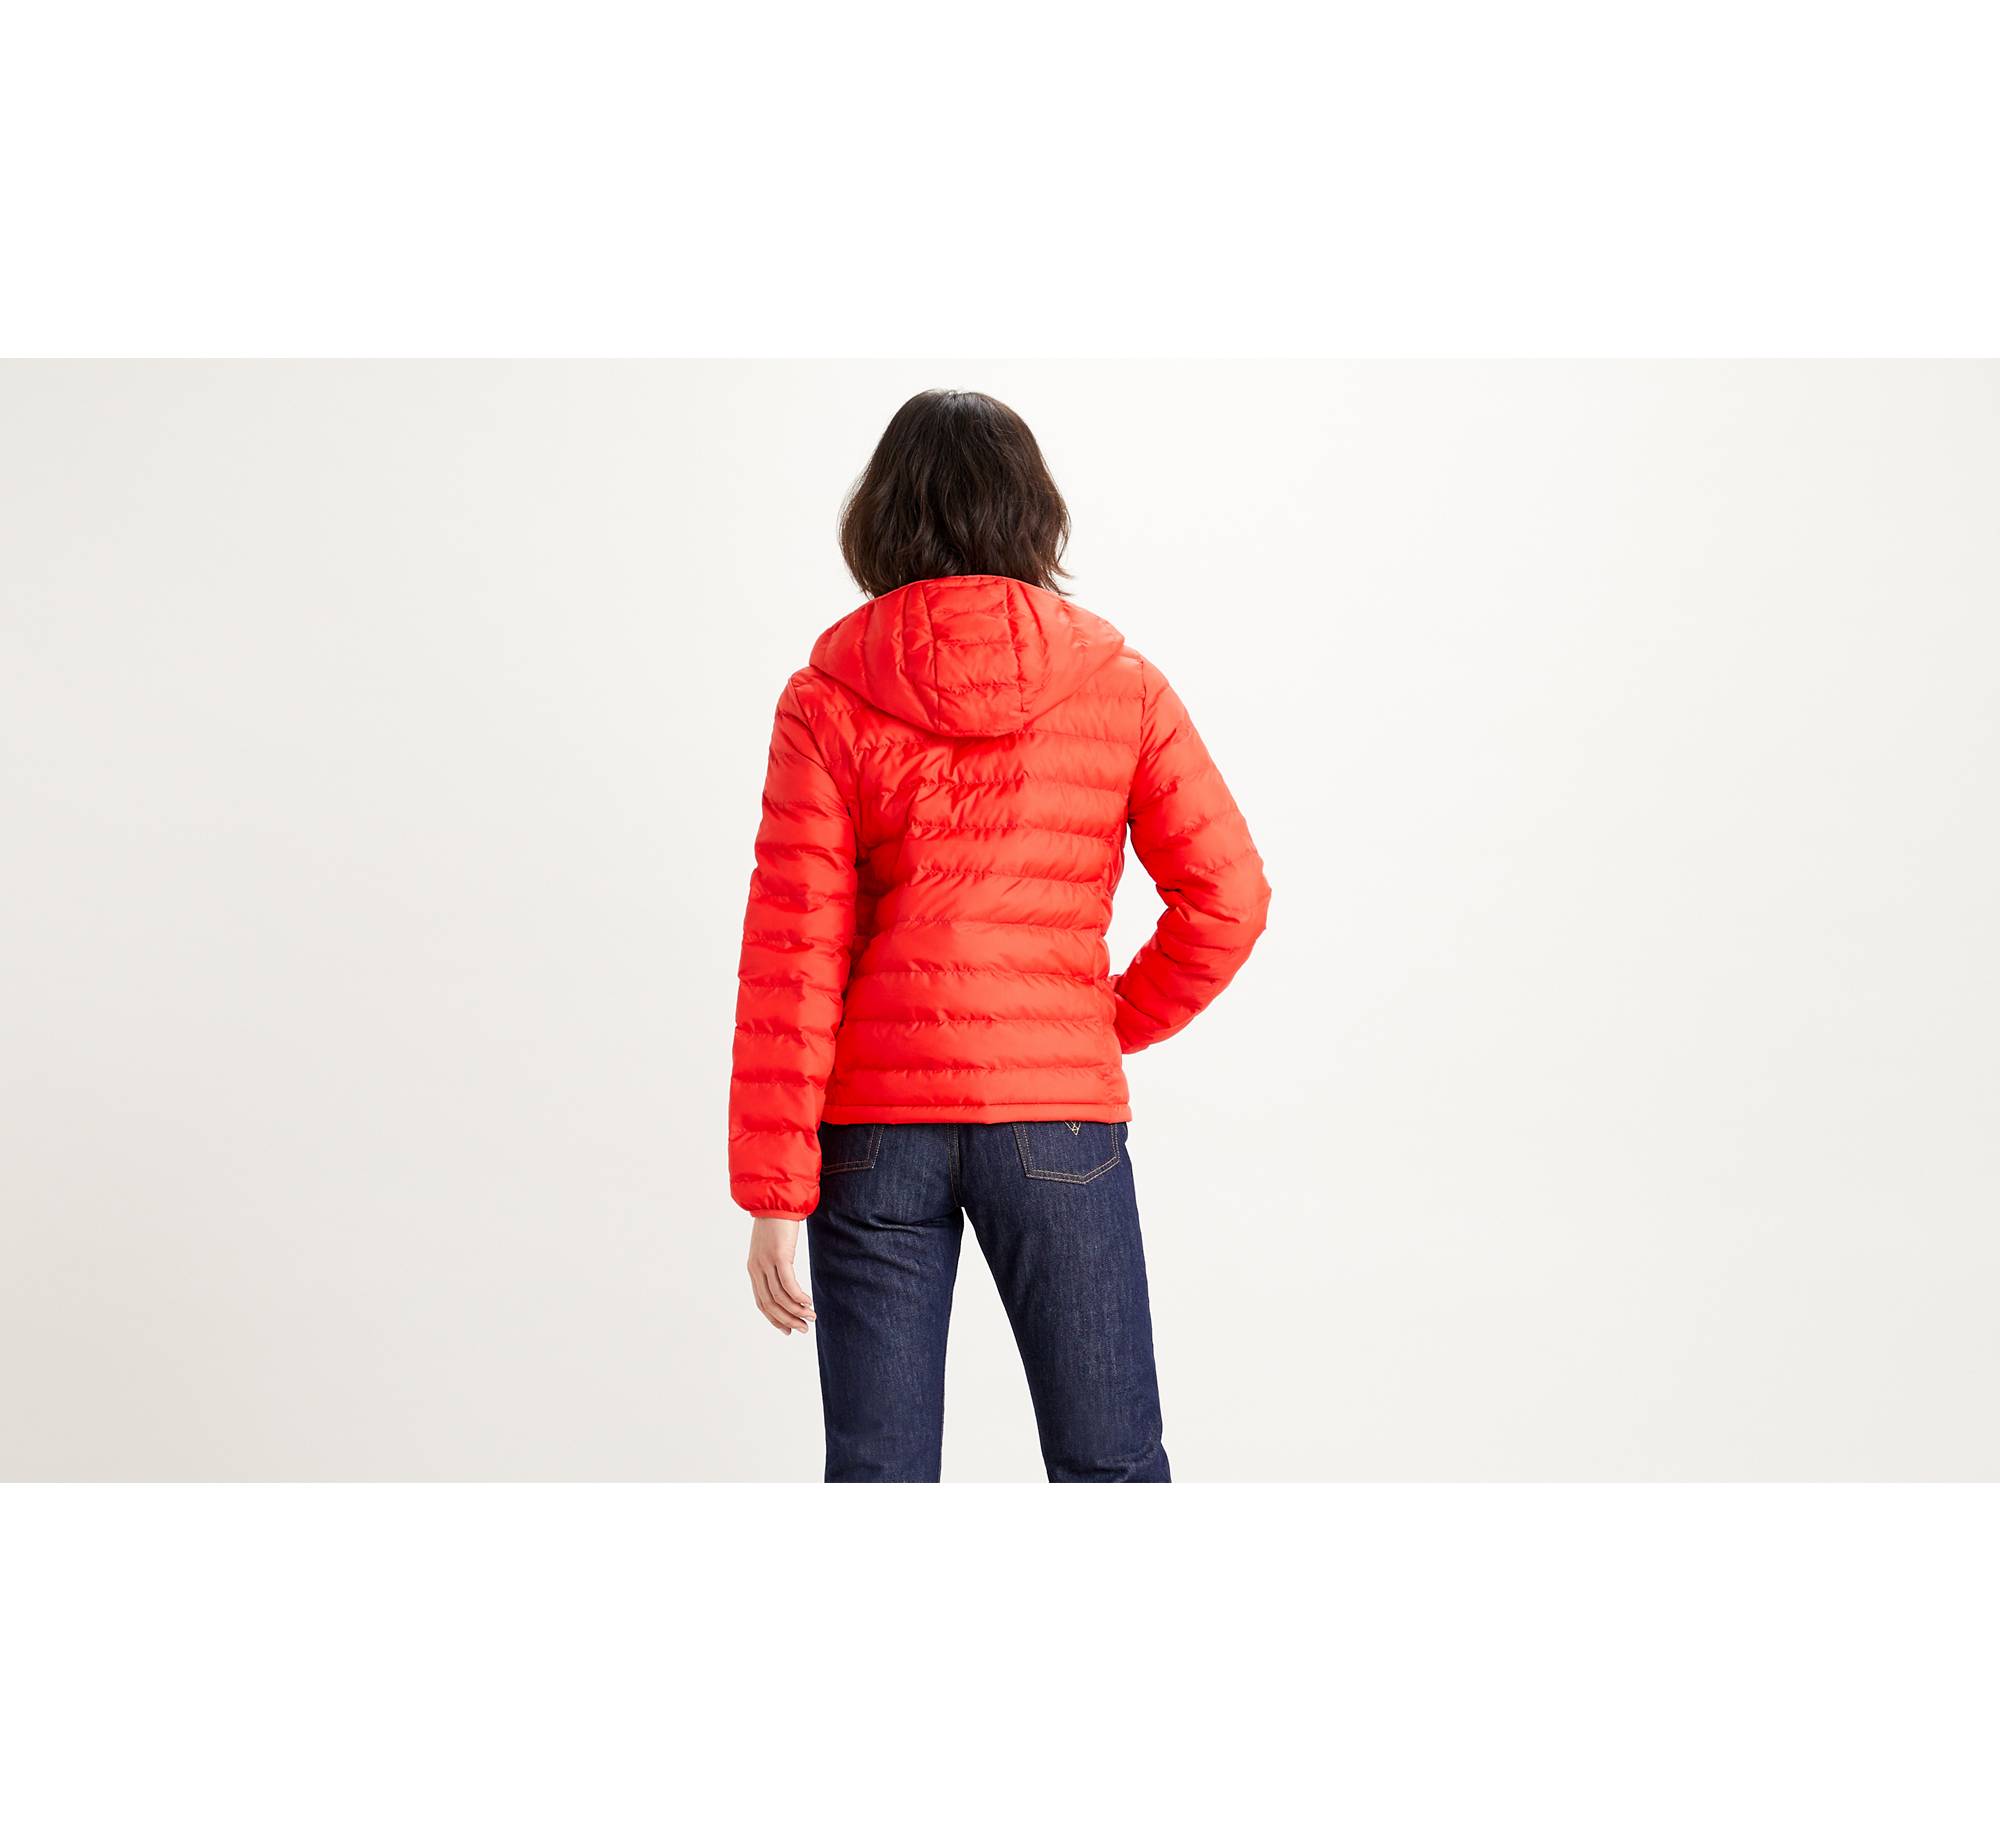 Pandora Packable Jacket - Red | Levi's® IT